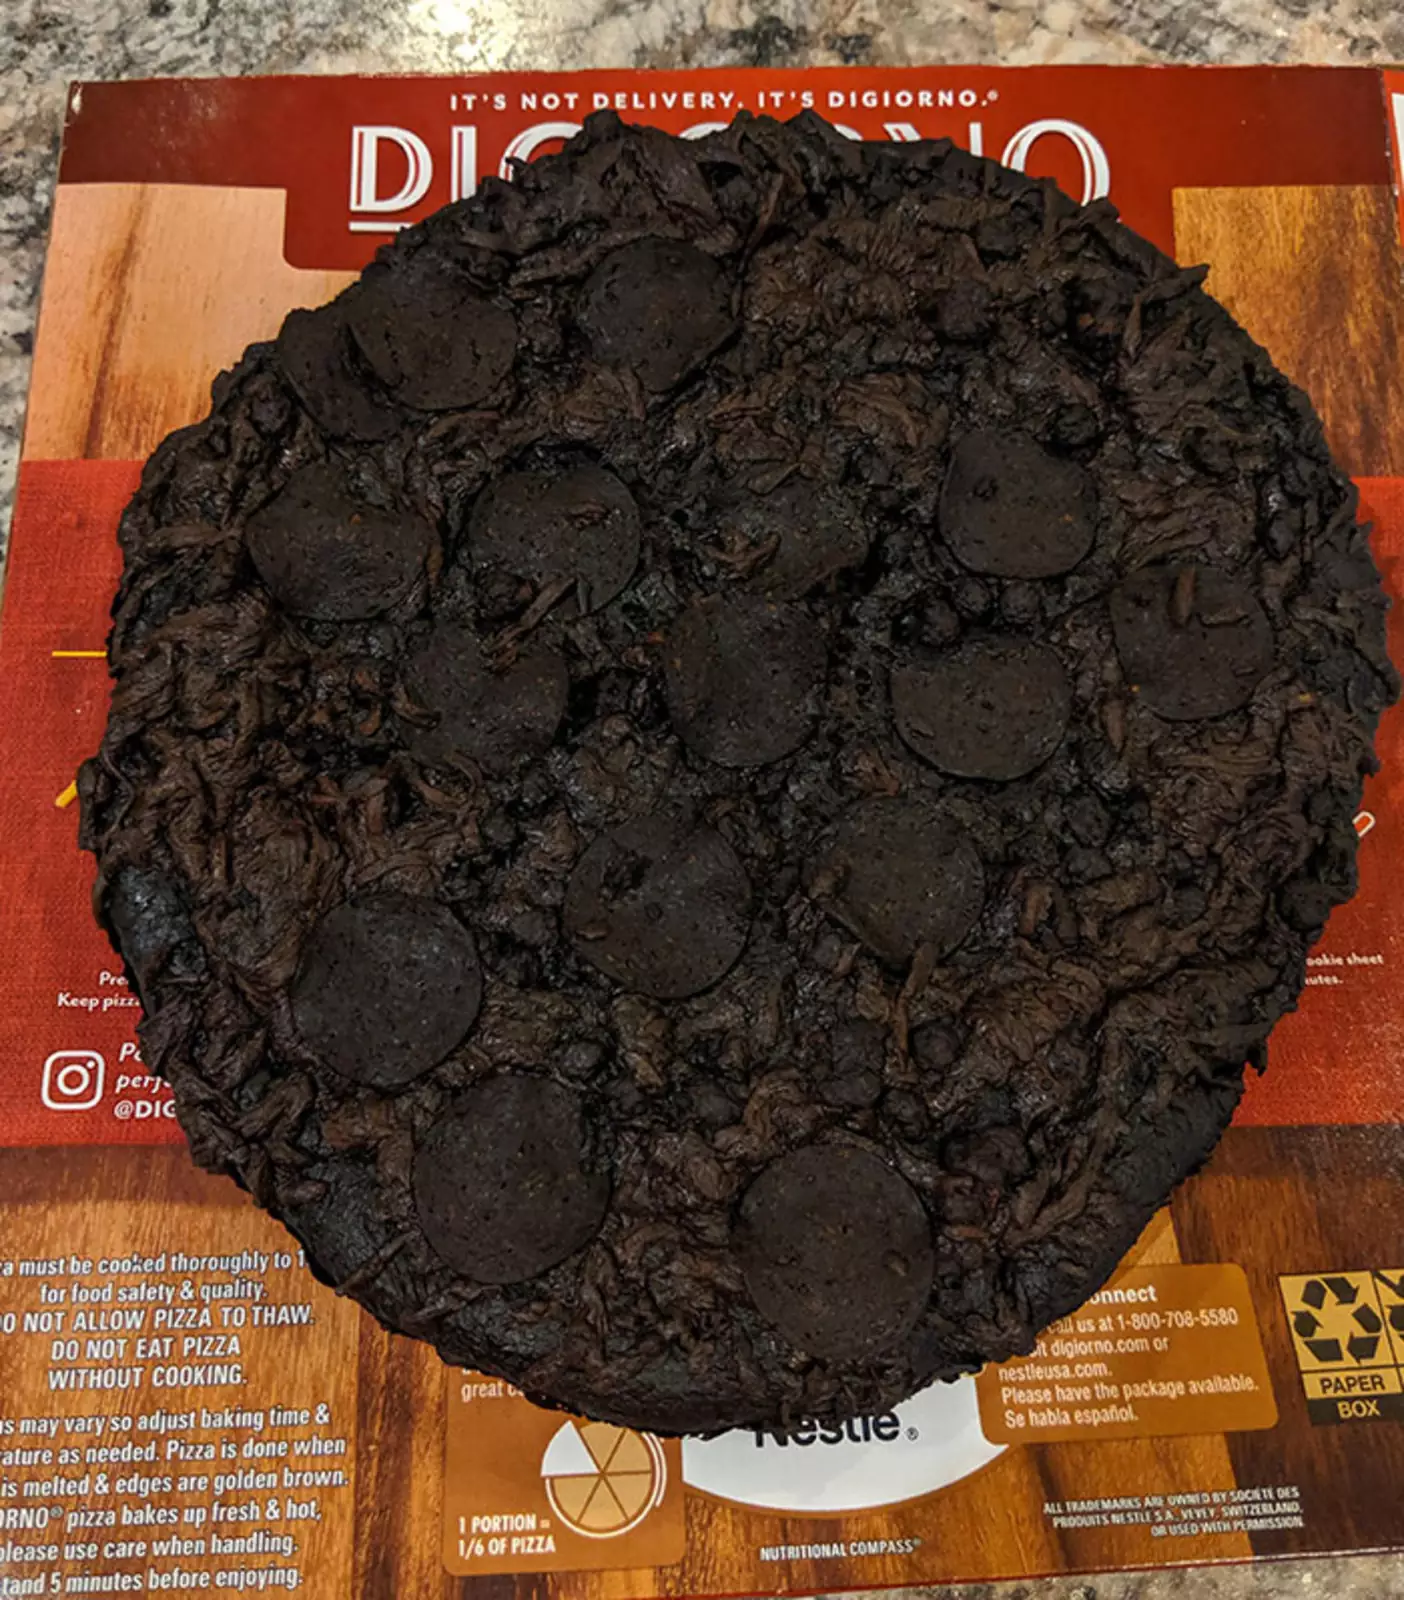 "Забыть о пицце на 8 часов. Сгорел так сильно, что выглядит как брауни с двойным шоколадом".